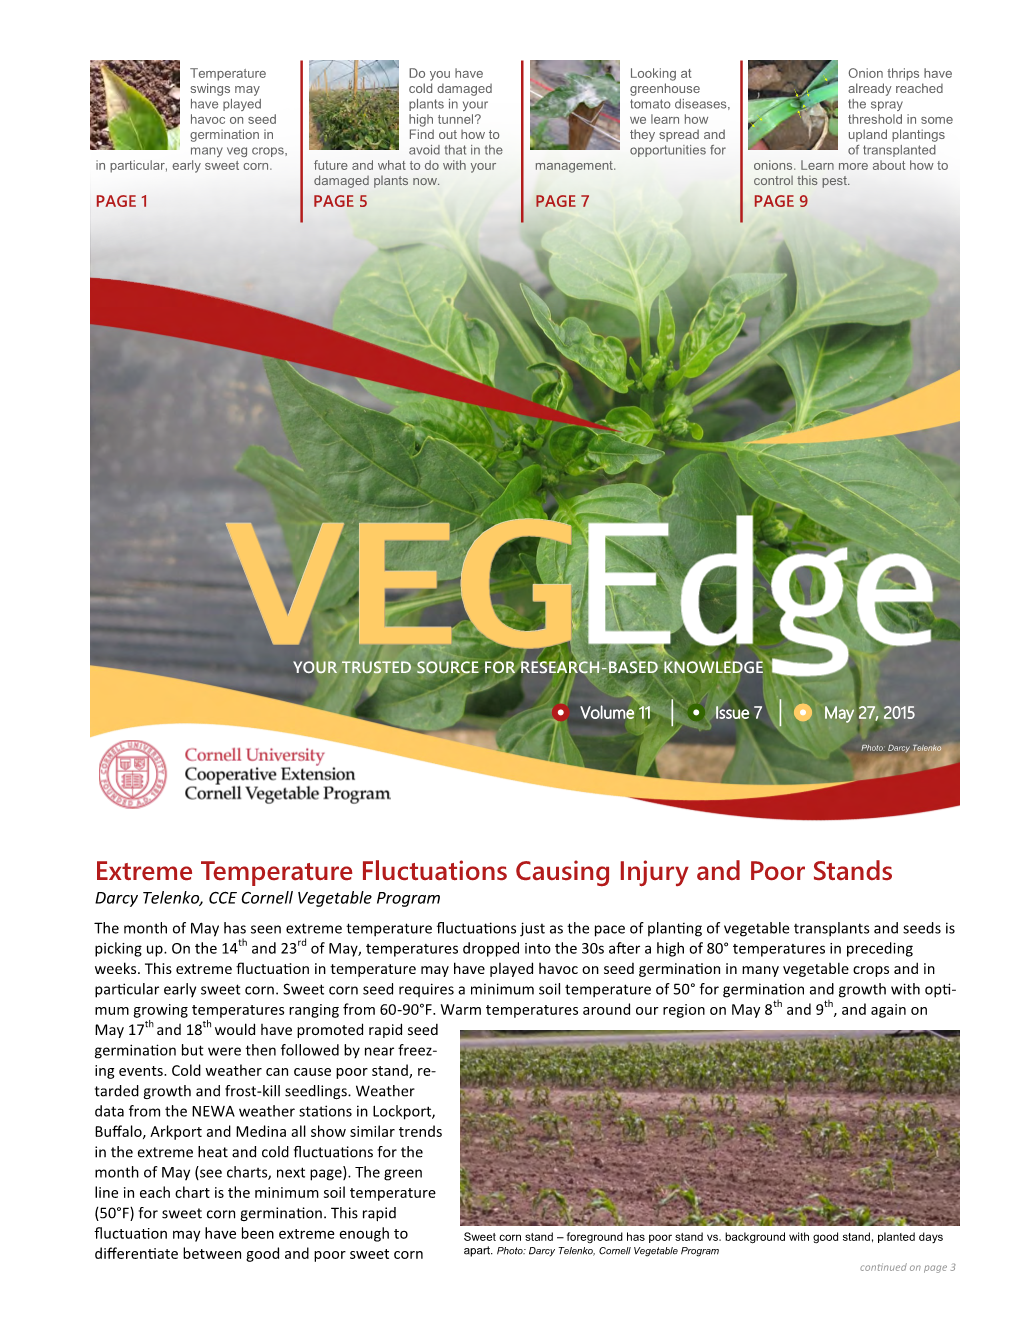 Vegedge Newsletter